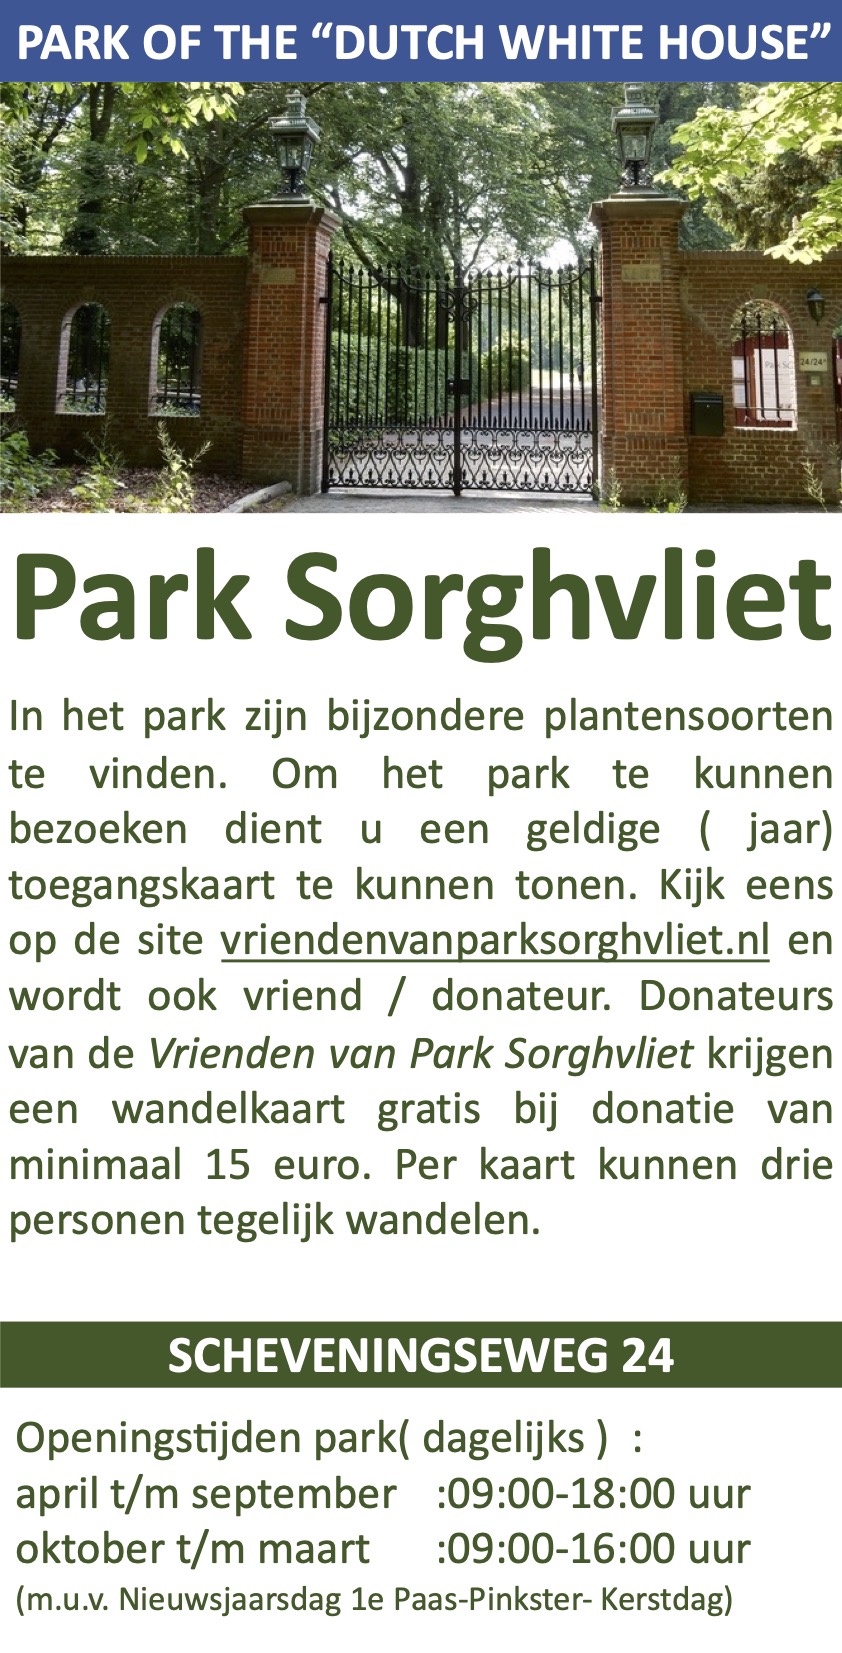 Park Sorghvliet Scheveningen Catshuis